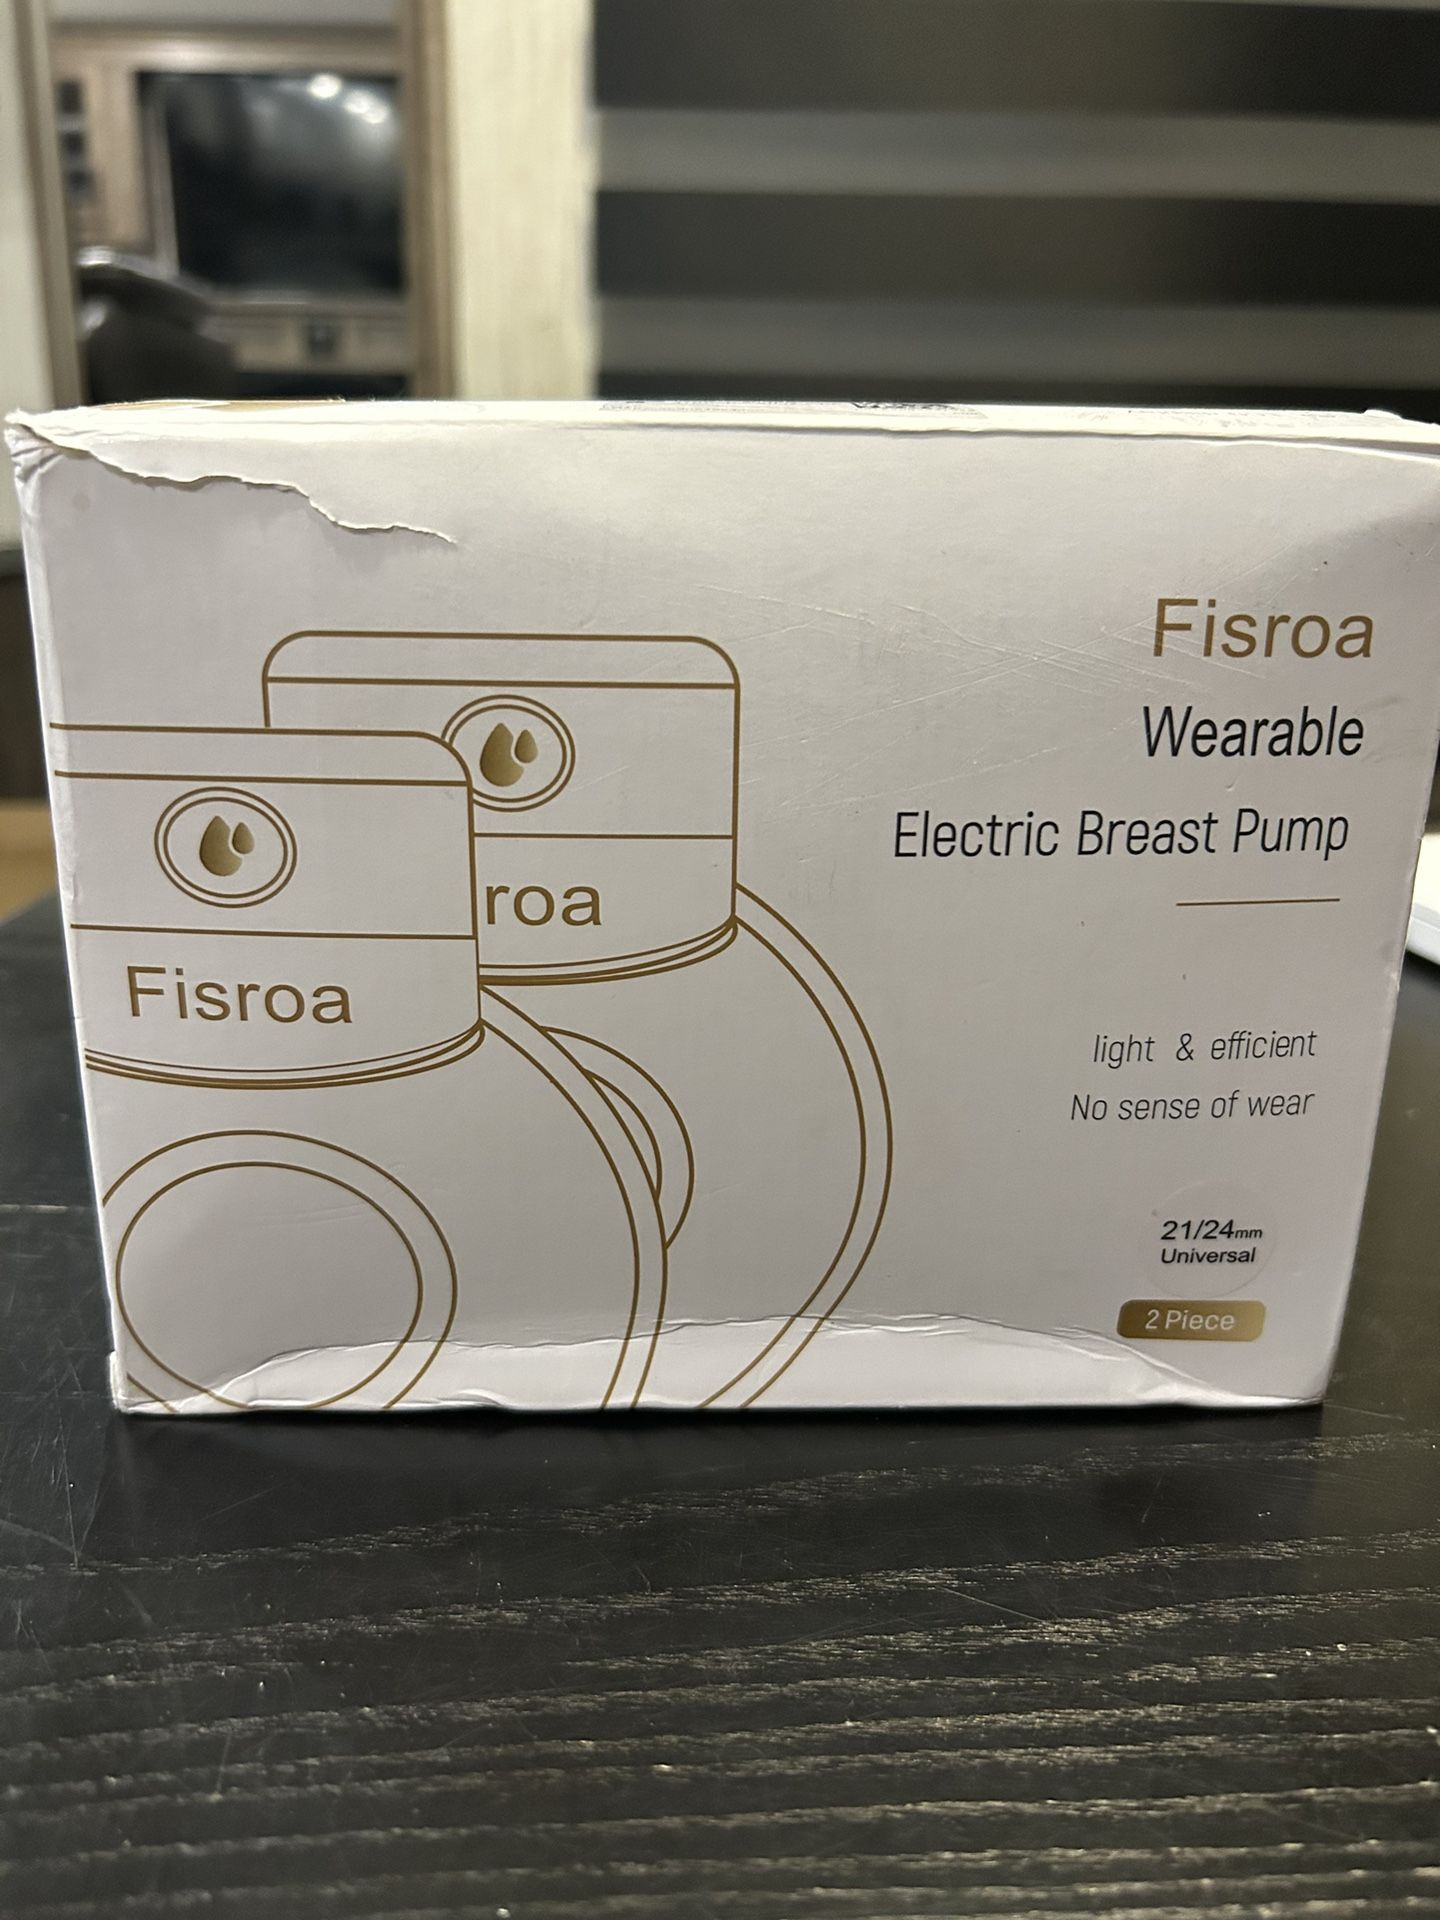 Fisroa Wearable Electric Breast Pump